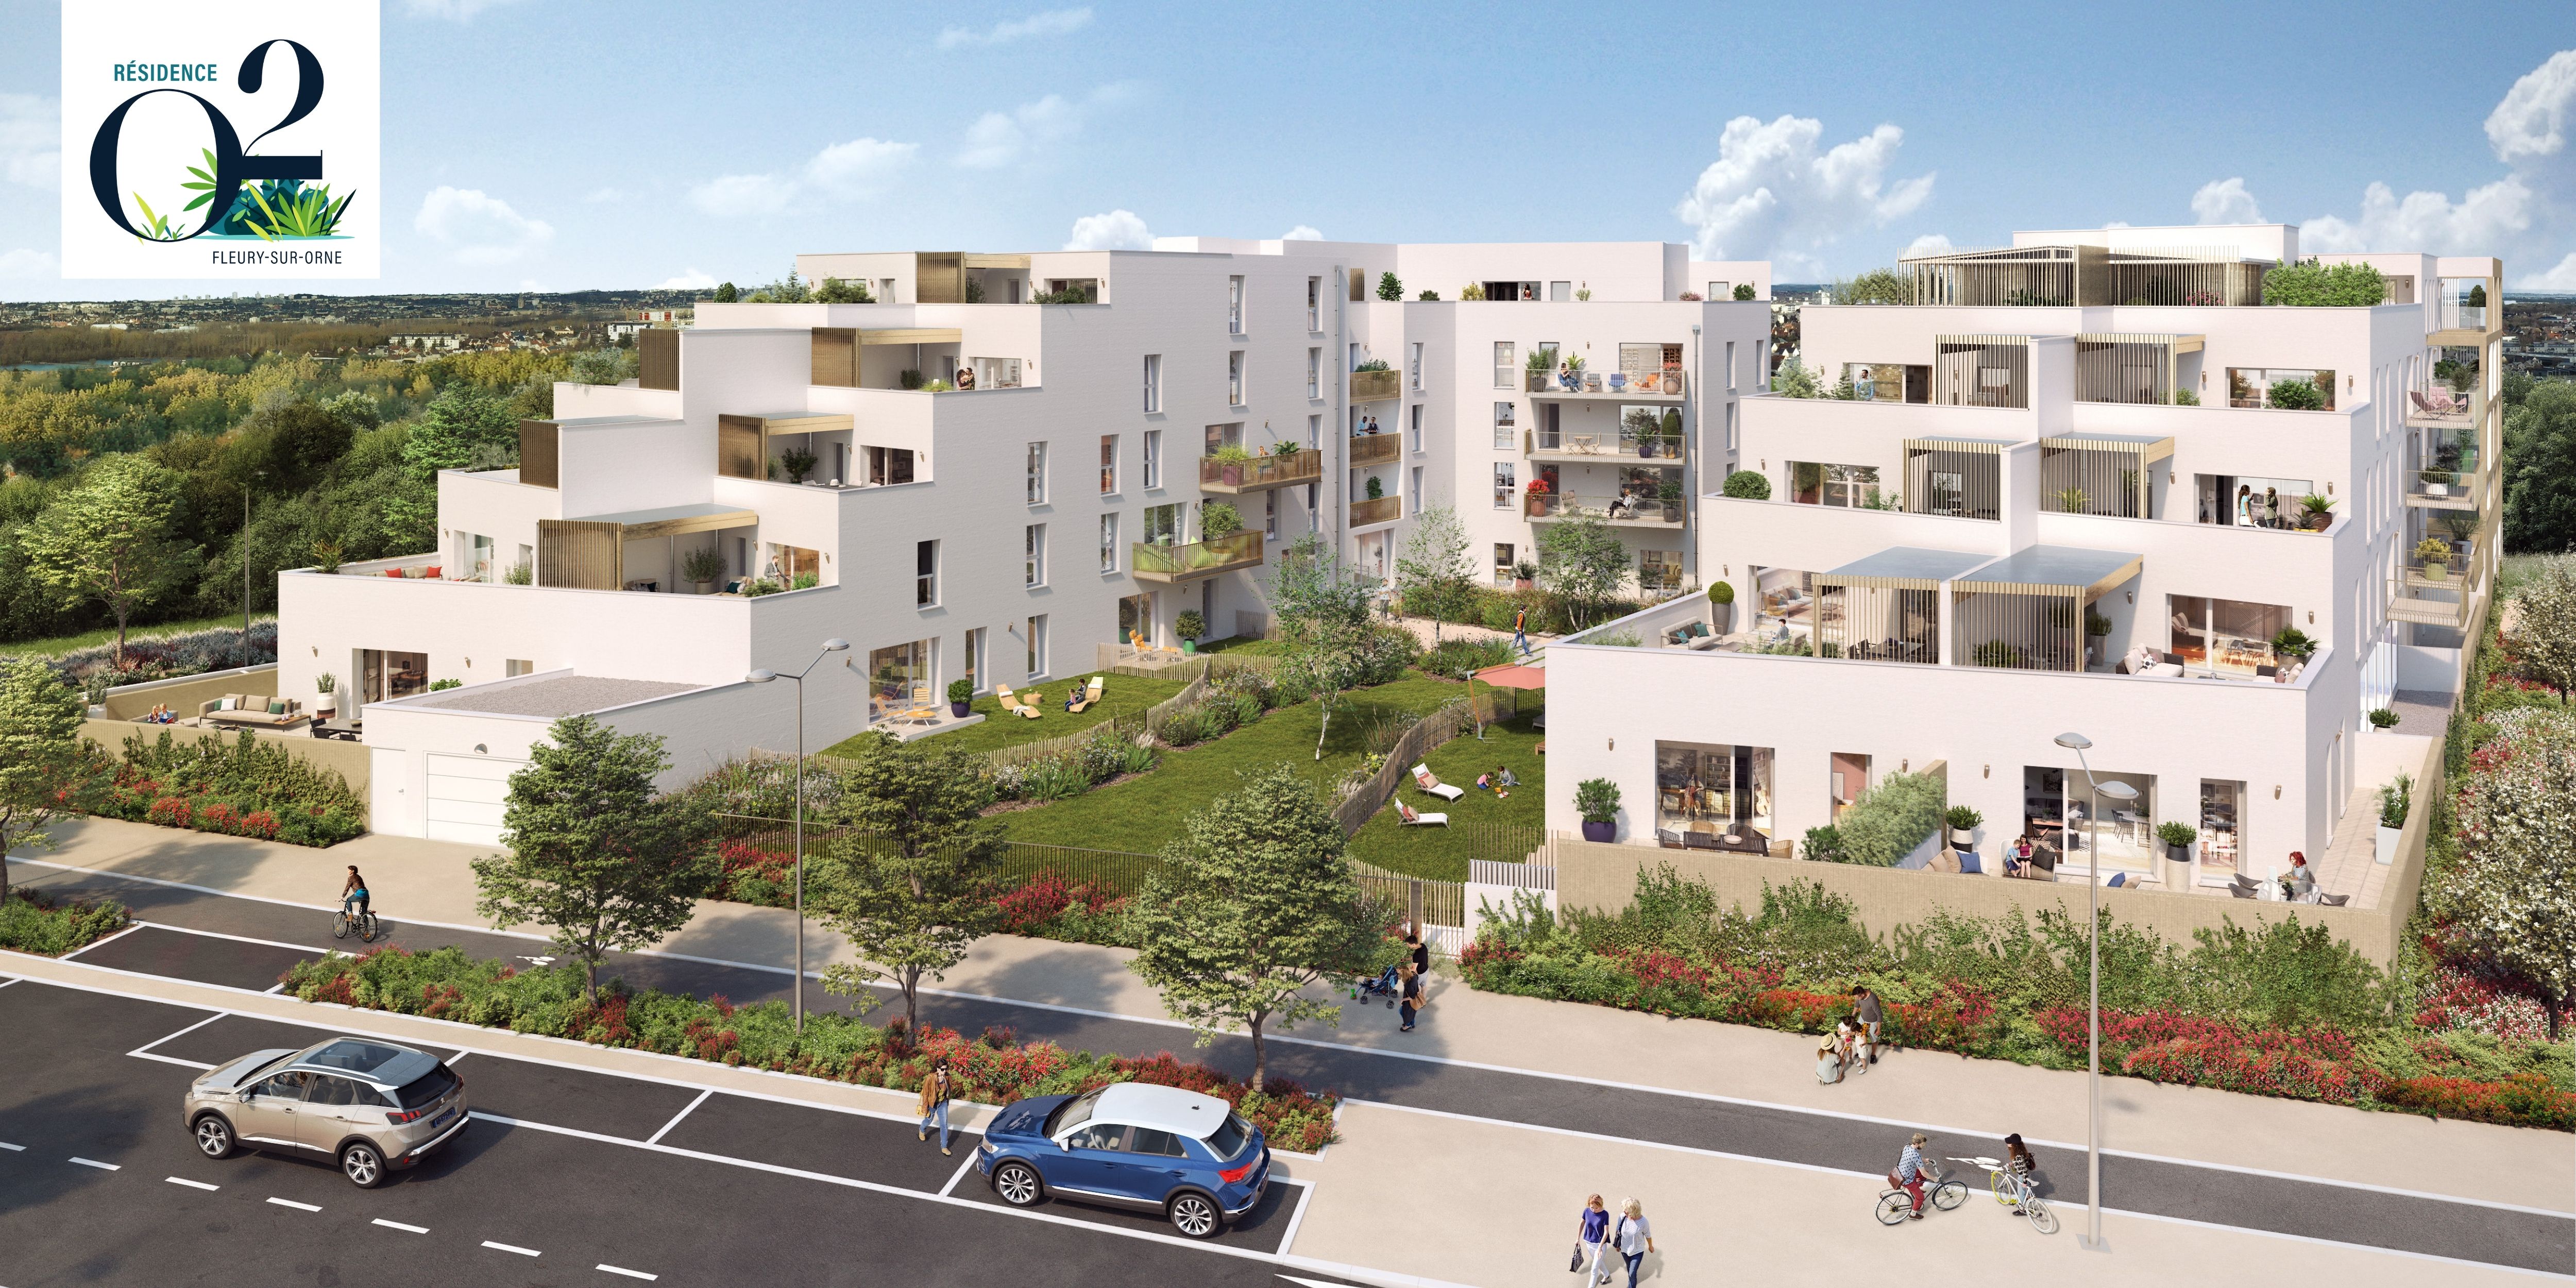 Programme Immobilier neuf Résidence O2 à Fleury sur Orne (14)